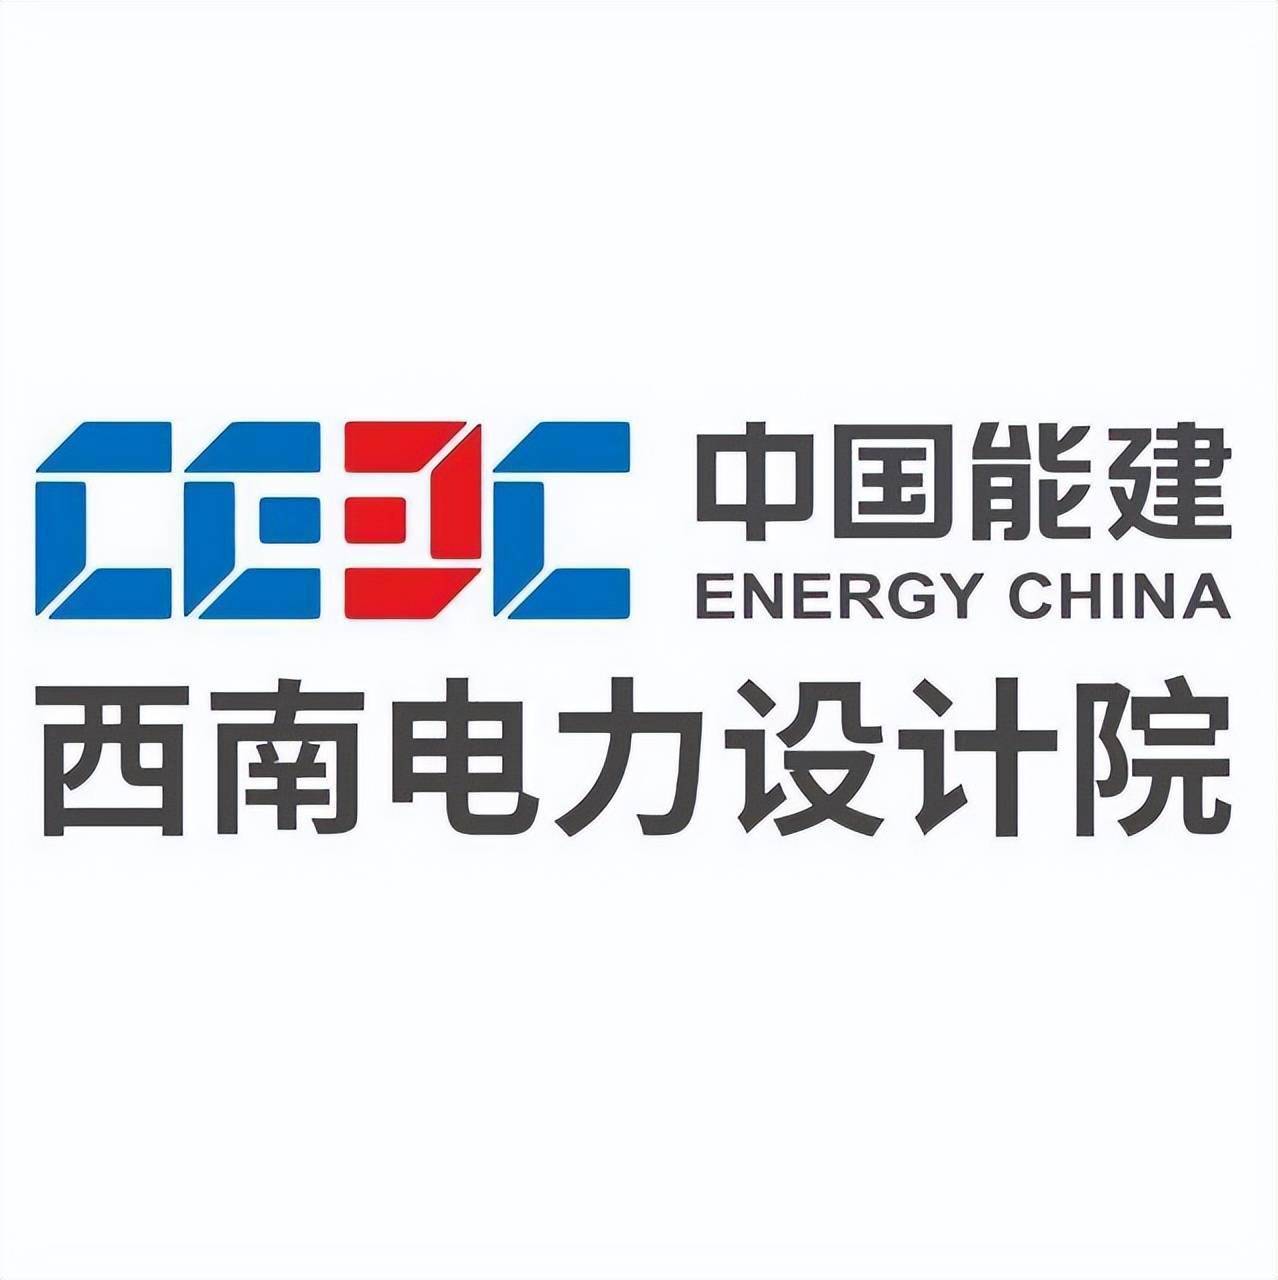 刘超,2015年入职中国能建规划设计集团西南院电网工程公司,从事变电